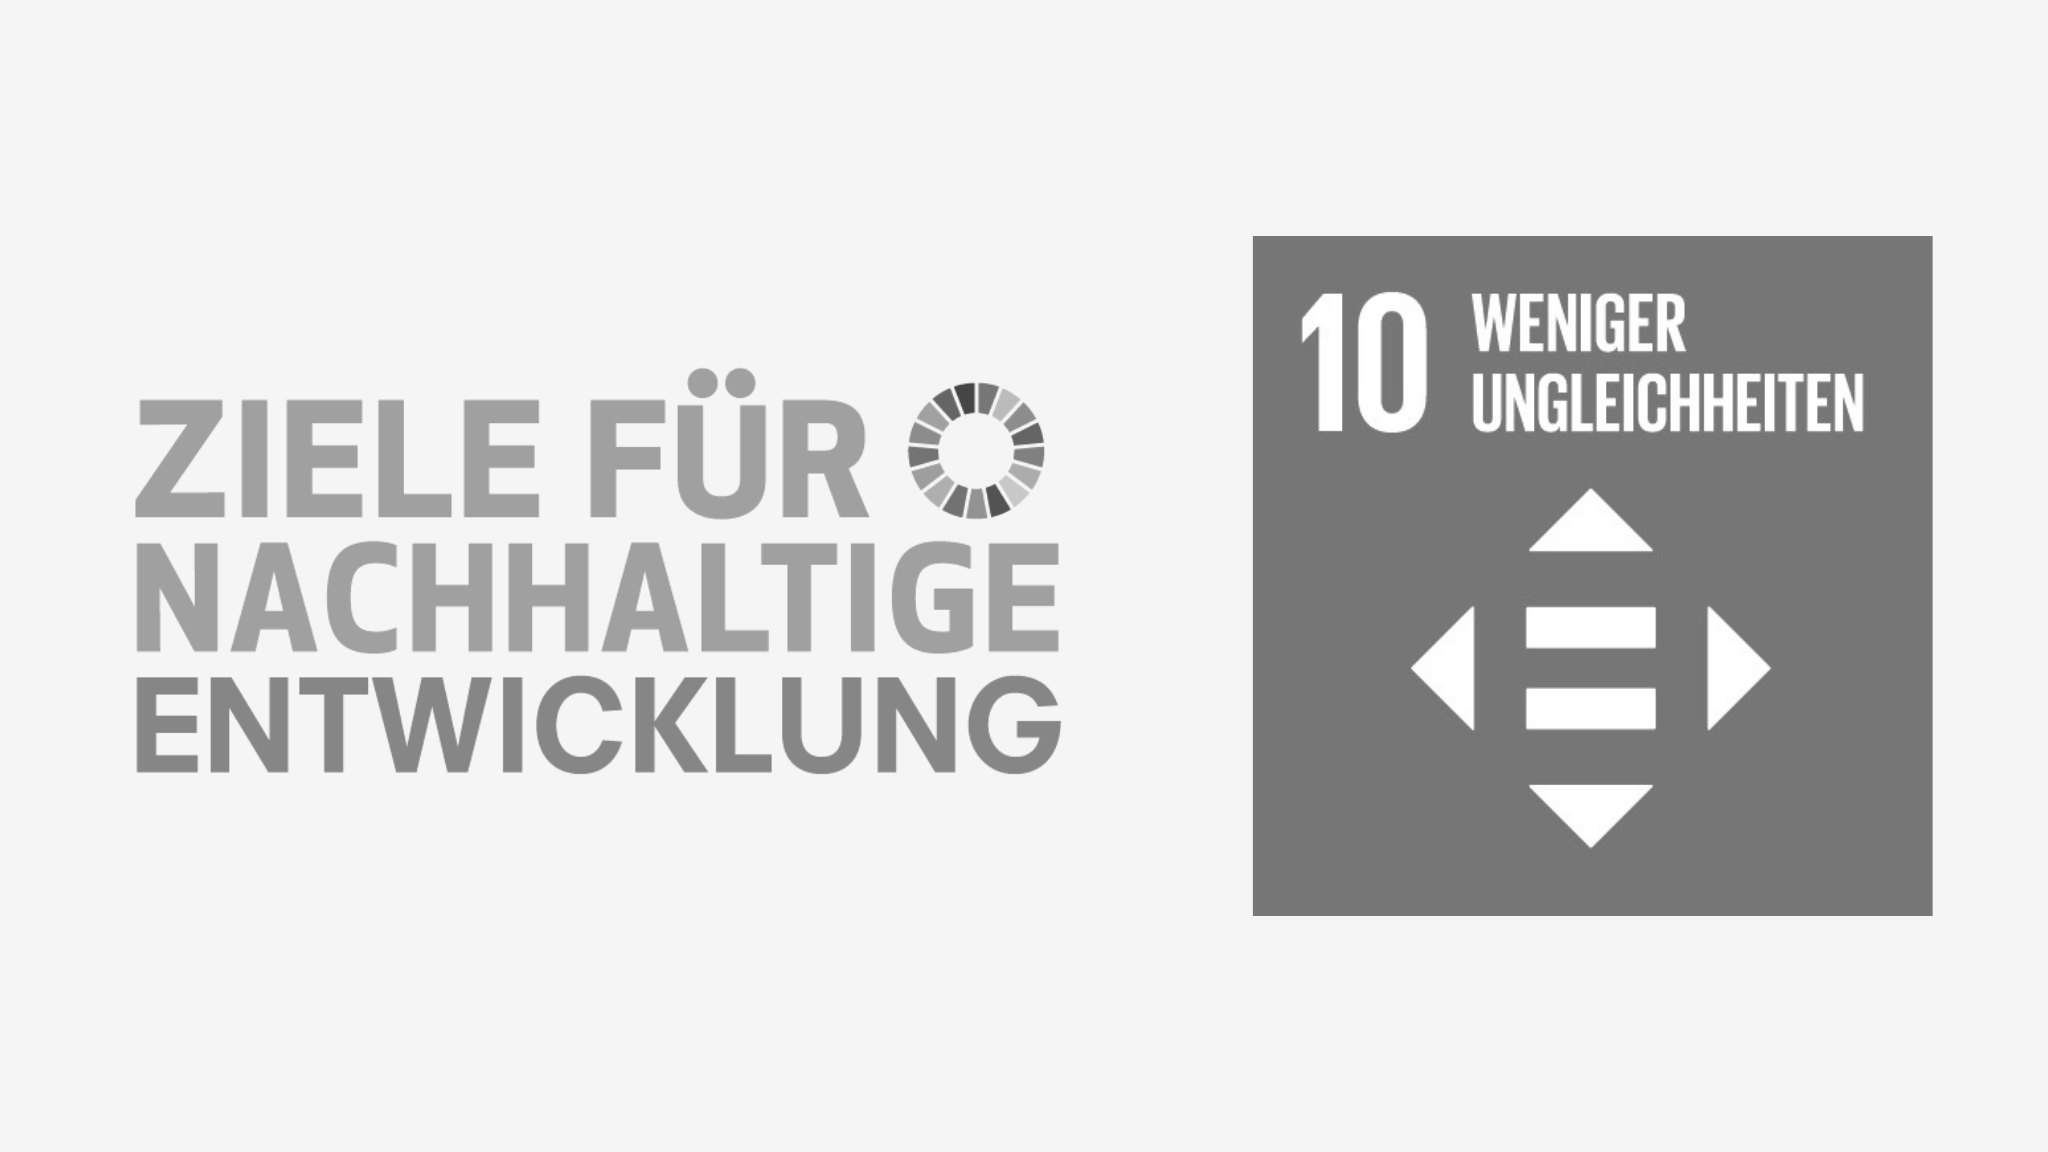 Schriftzug "Ziele für nachhaltige Entwicklung" mit Icon von SDG 10 "Weniger Ungleichheiten"